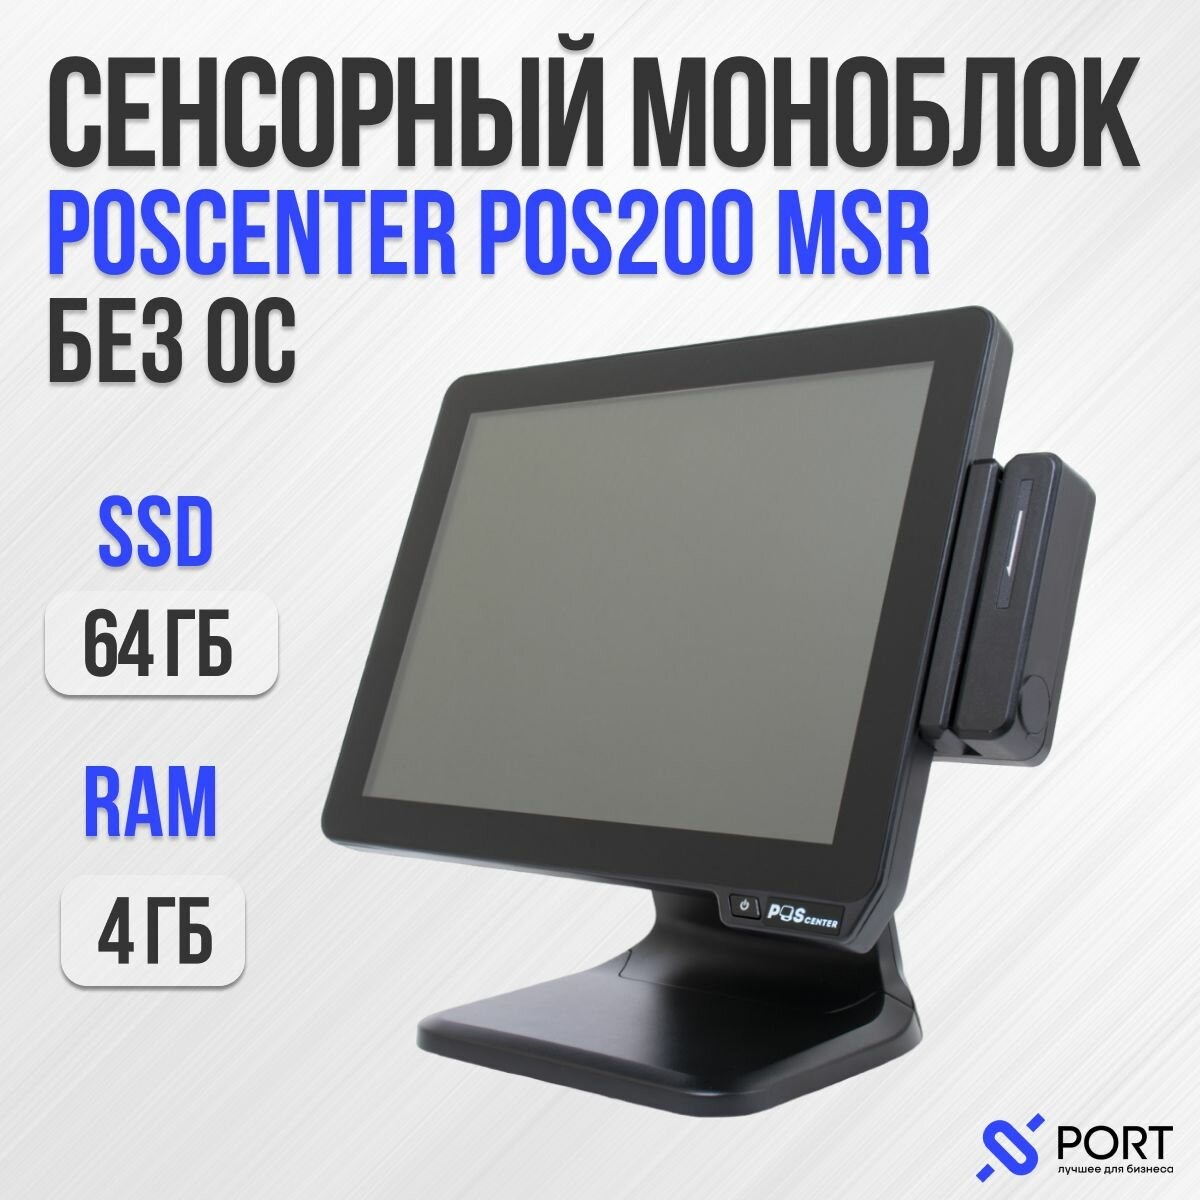 Сенсорный pos моноблок poscenter POS200, 15", RAM 4Gb, SSD 64Gb, MSR, Без ОС